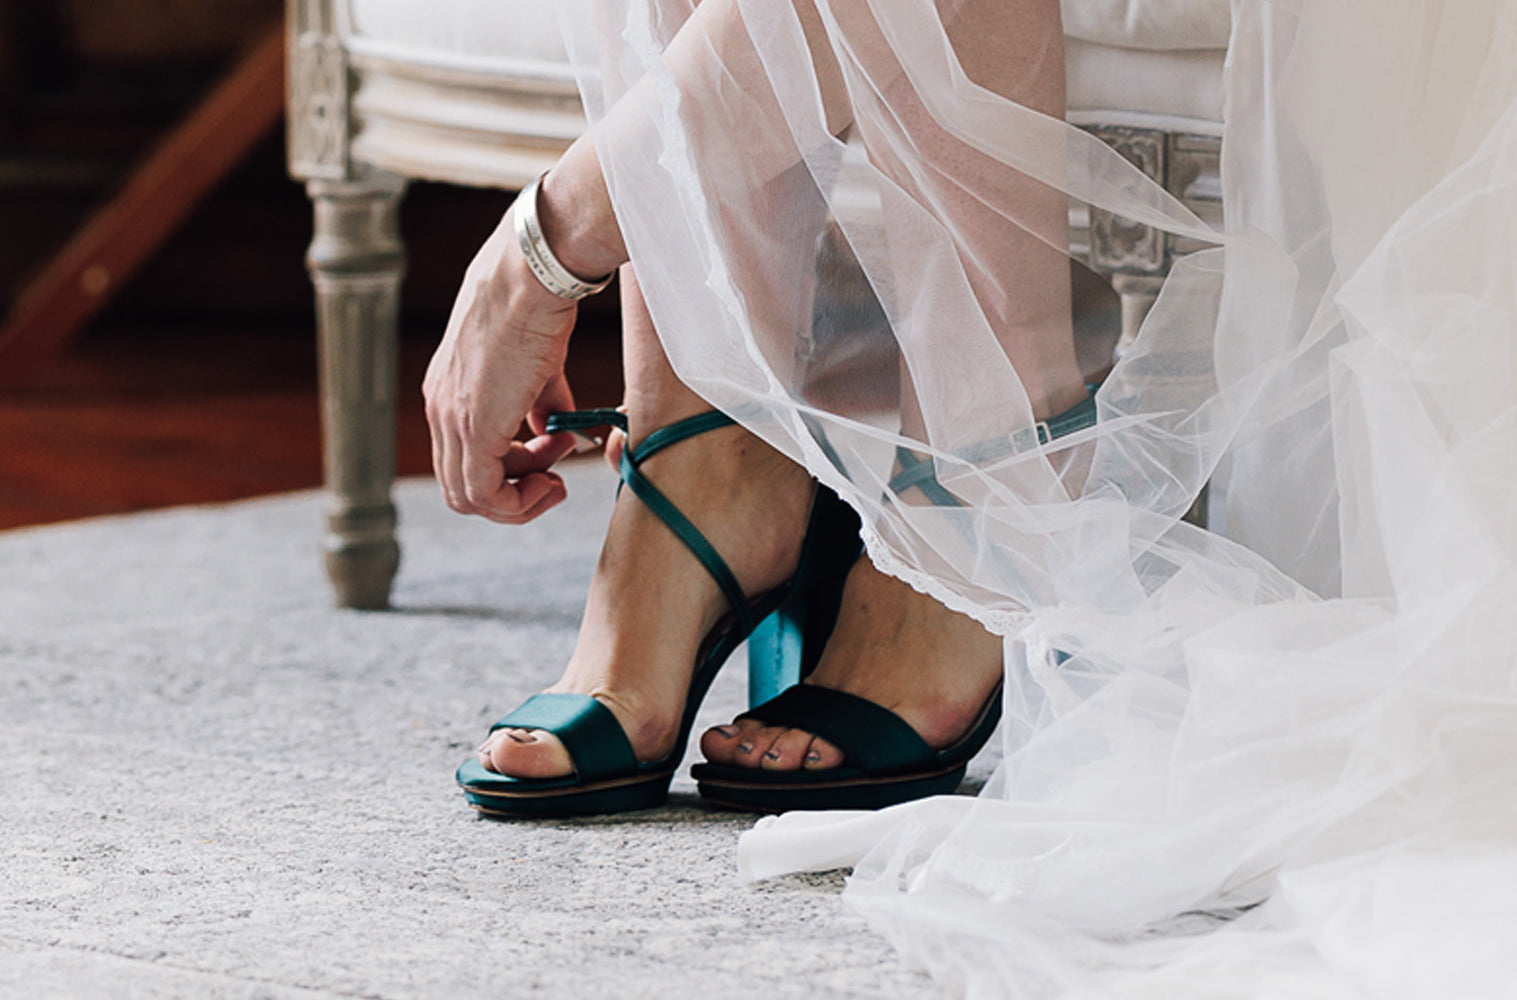 Dyeing Wedding Shoes, Weddings, Wedding Attire